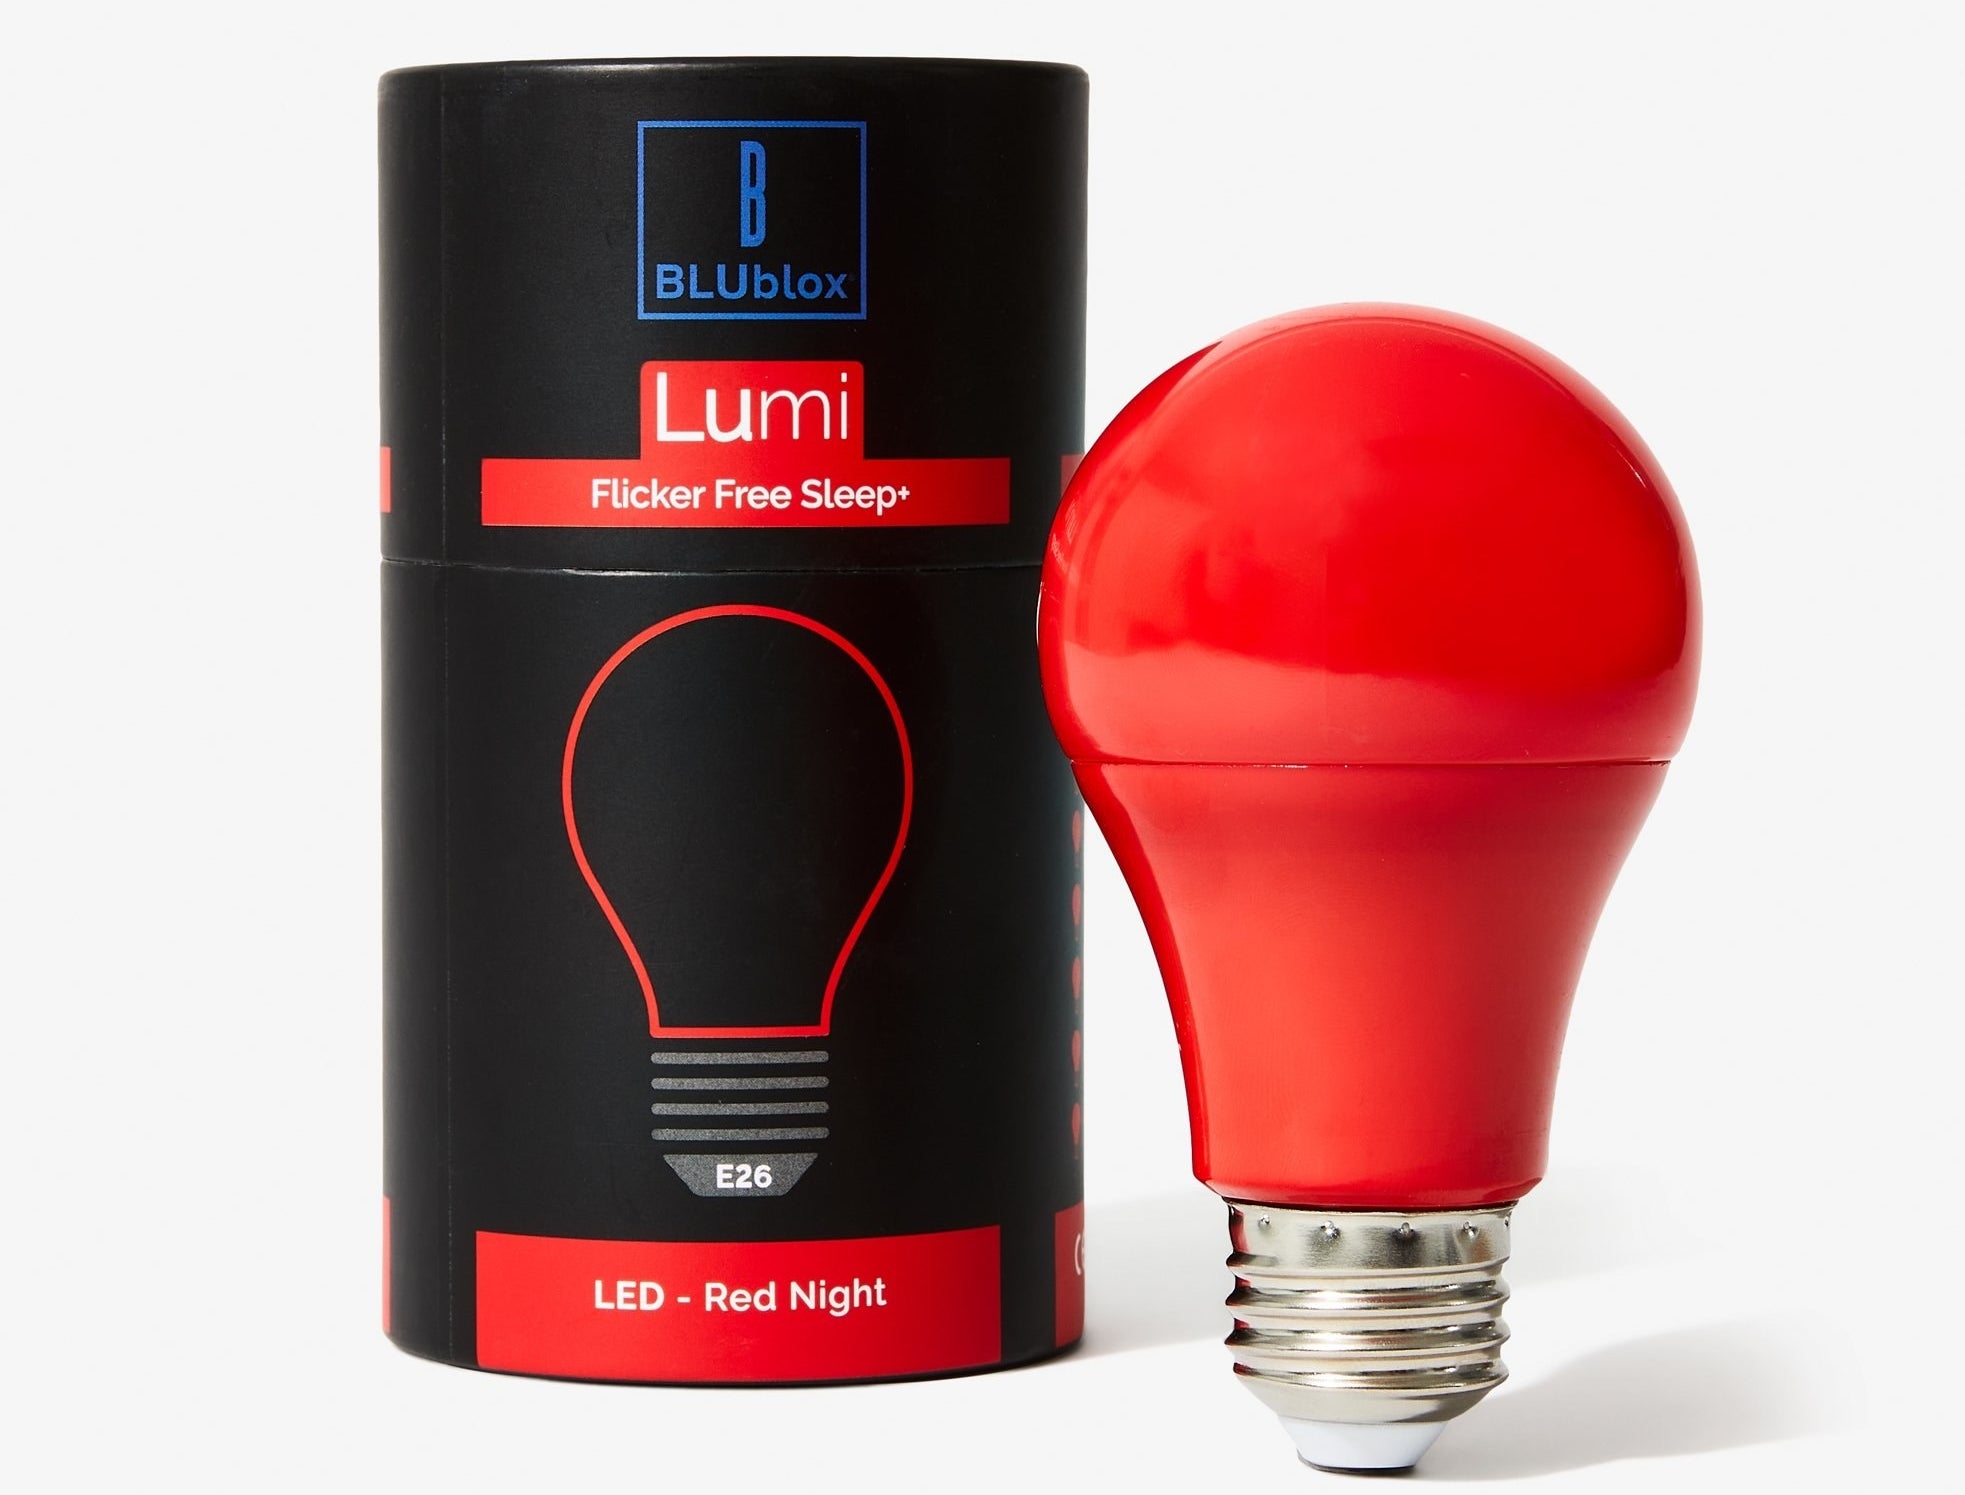 The red sleep light bulb